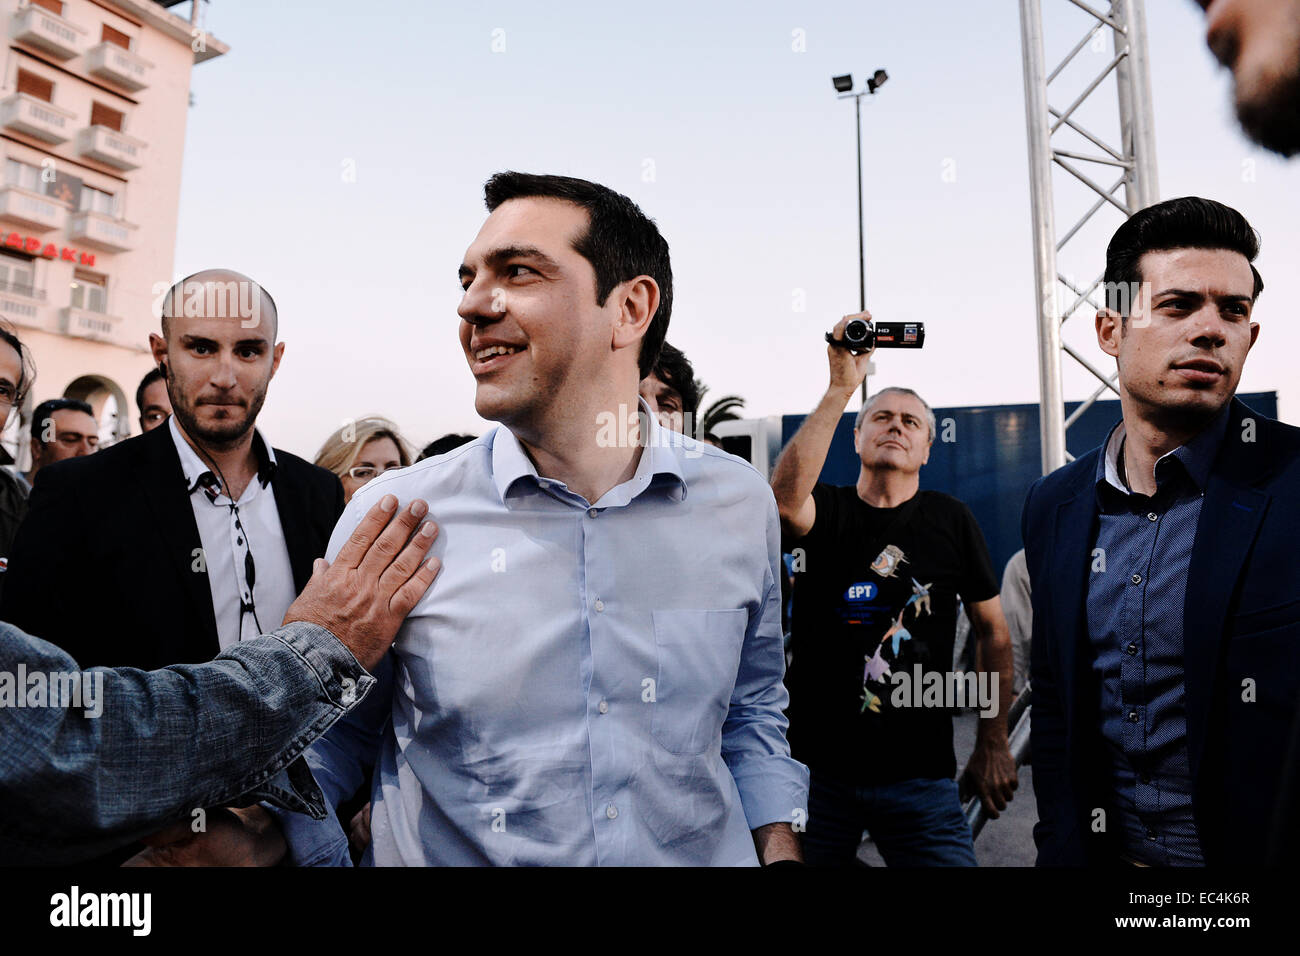 Alexis Tsipras dà un discorso a Salonicco prima il greco comune Elezioni 2014, Grecia Foto Stock